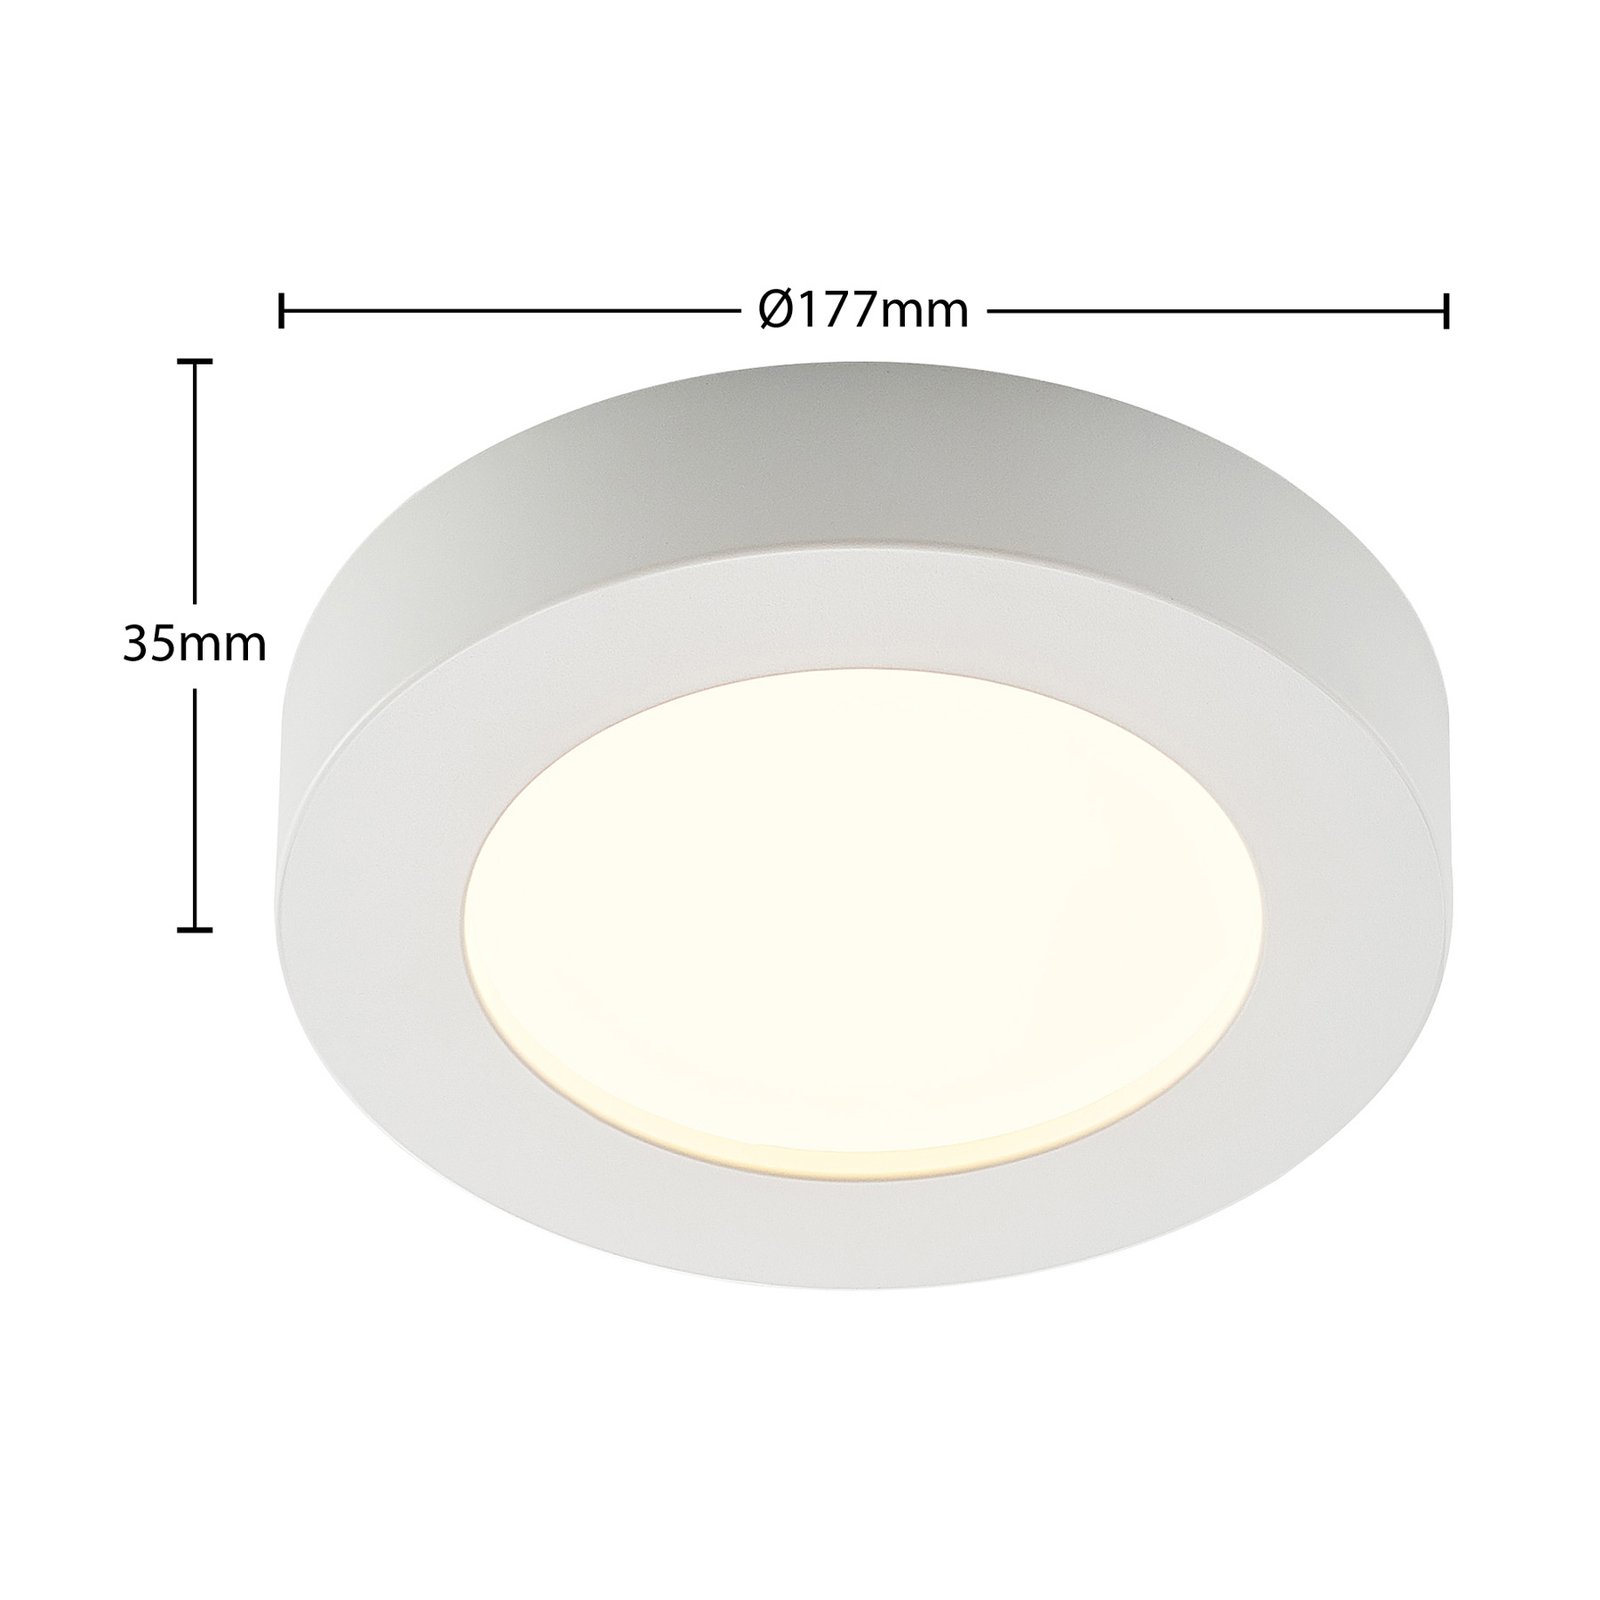 Prios LED mennyezeti lámpa Edwina, fehér, 17,7 cm, dimmelhető